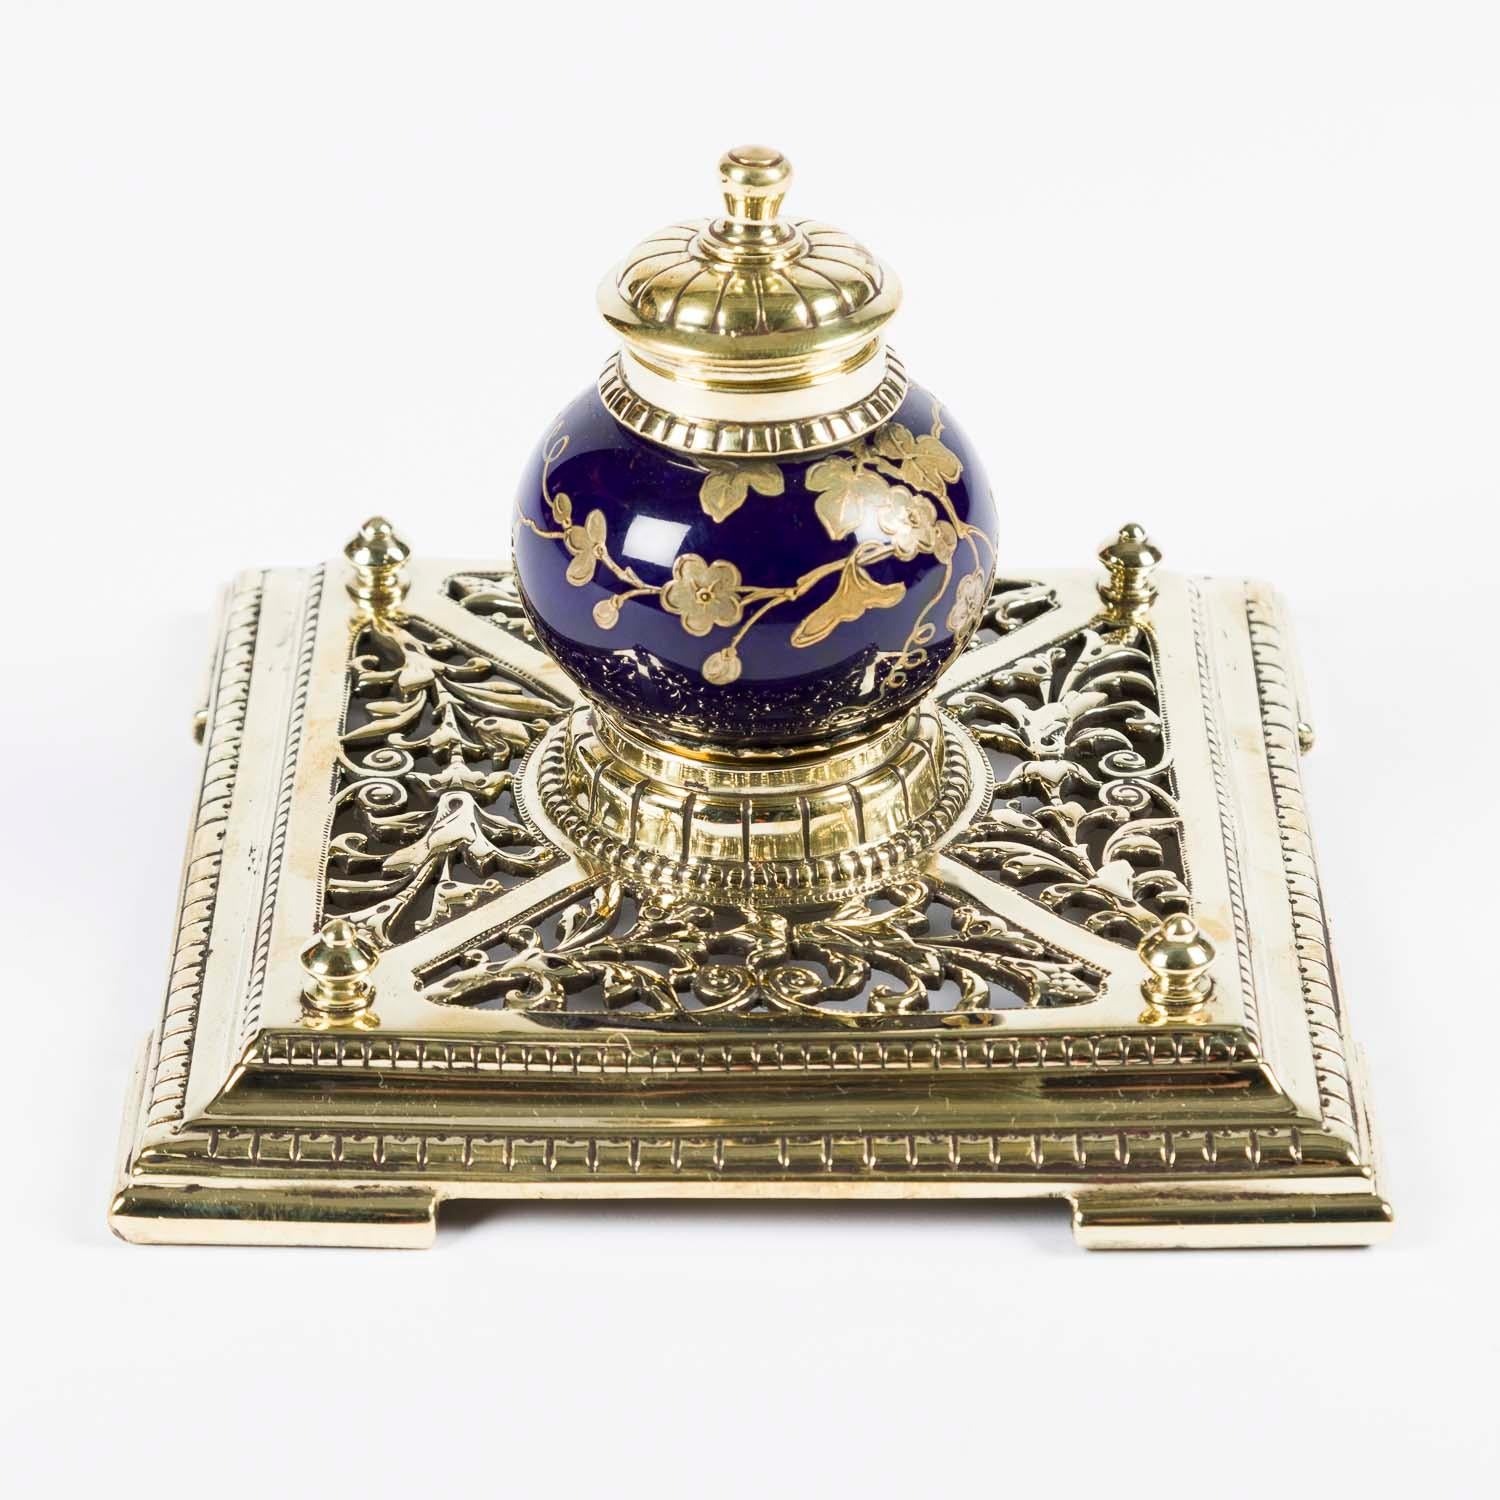 Encrier en céramique bleu et or de style chinois, avec un couvercle en laiton à charnière, monté sur une base en laiton réticulé.